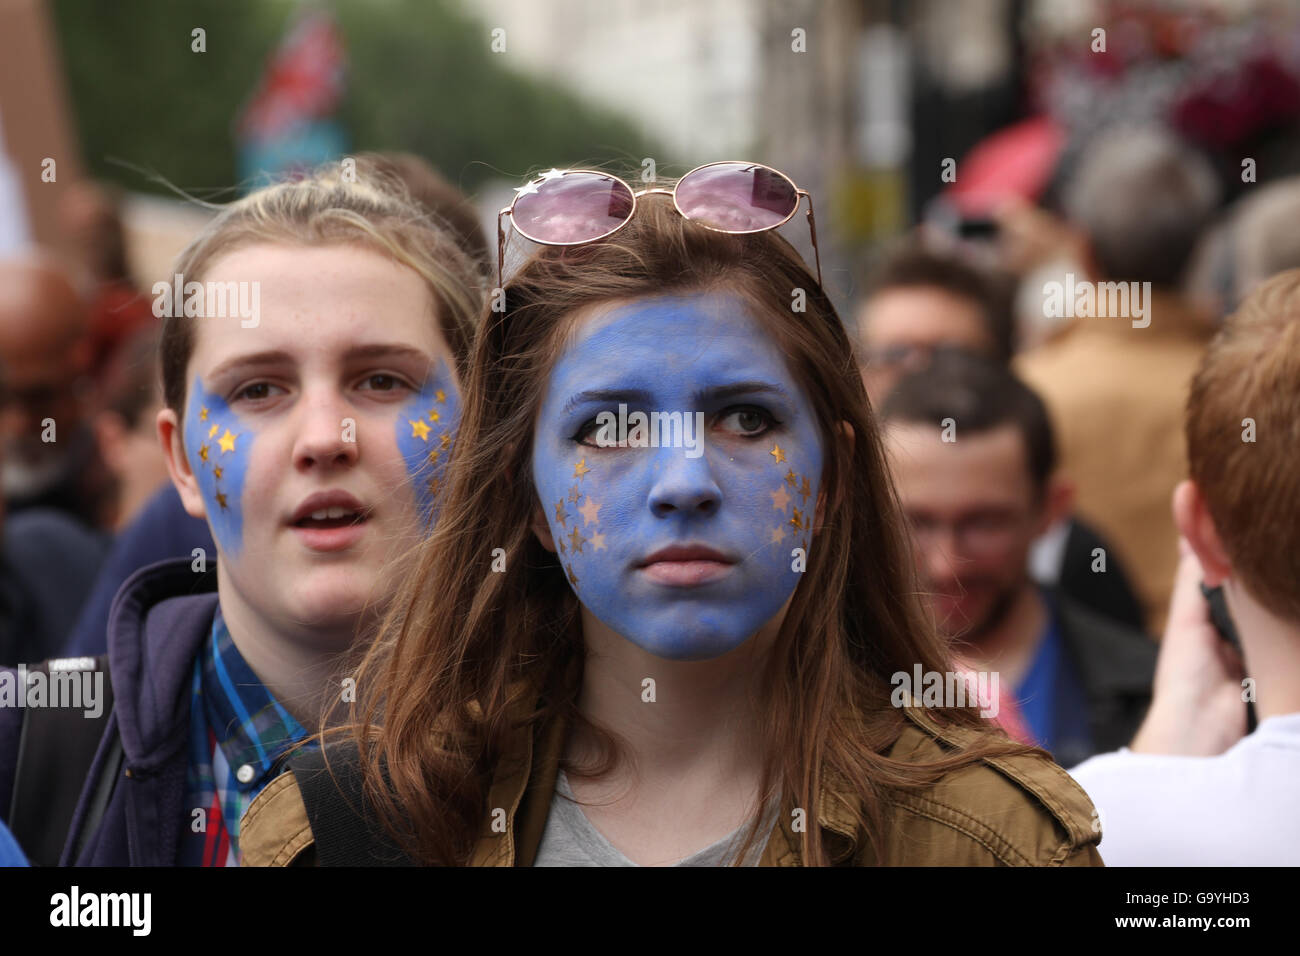 Londra, Regno Unito. 02Luglio, 2016. ​LONDON, Regno Unito - 2 luglio: Due volto dipinto di amici marzo insieme a migliaia di altri pro sostenitori dell'UE a Londra prendere parte nel mese di marzo per l'Europa la dimostrazione di una settimana dopo il referendum Brexit votazione. La pr i sostenitori dell'UE marzo da Hyde Park a Piazza del parlamento.Foto: David Mbiyu/ Alamy Nuovo Live Foto Stock